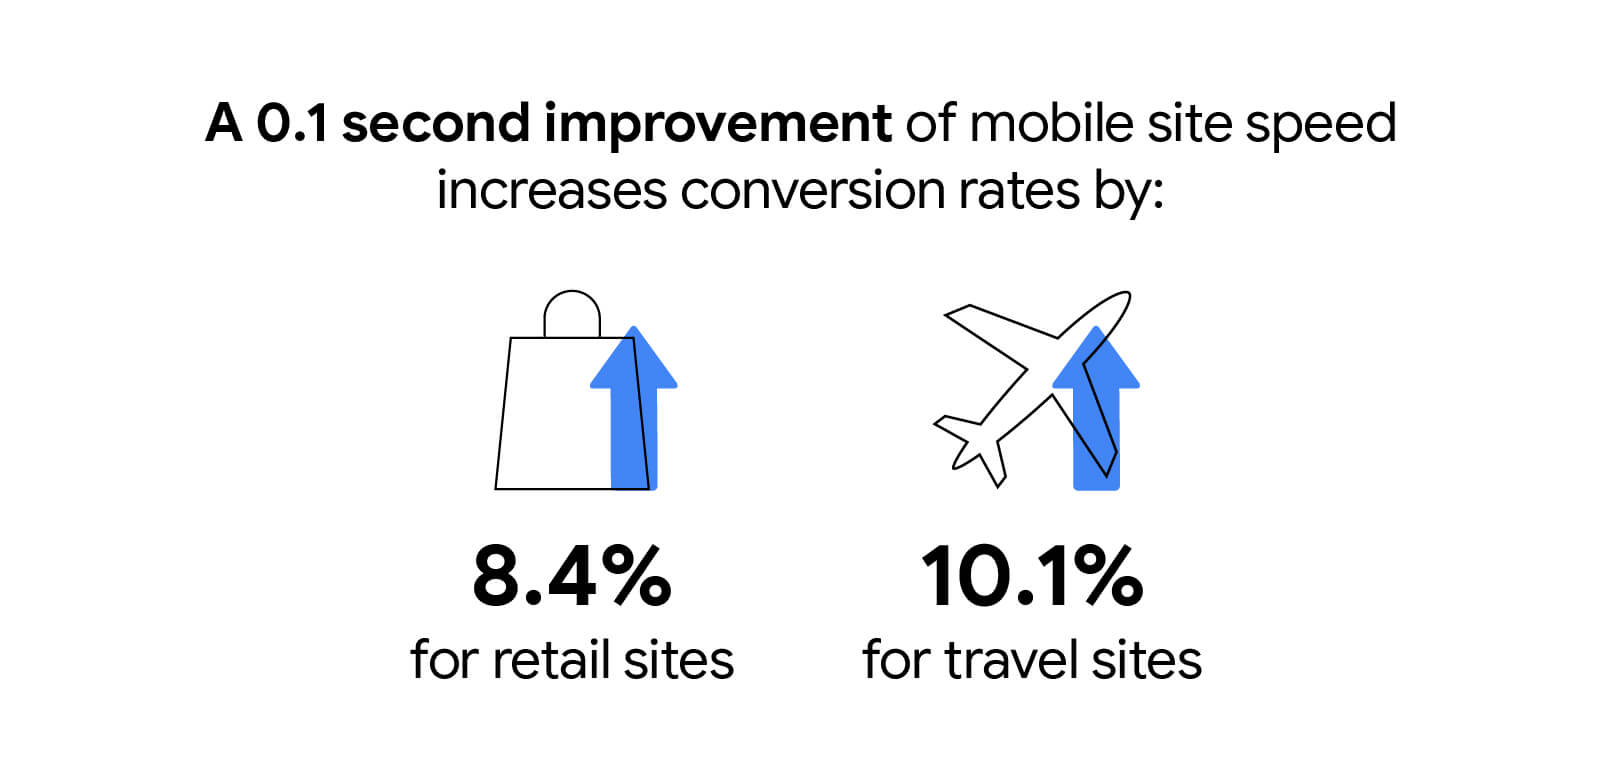 モバイルサイトの速度が 0.1 秒改善すると、コンバージョン率が小売サイトで 8.4%、旅行サイトで 10.1% 向上します。